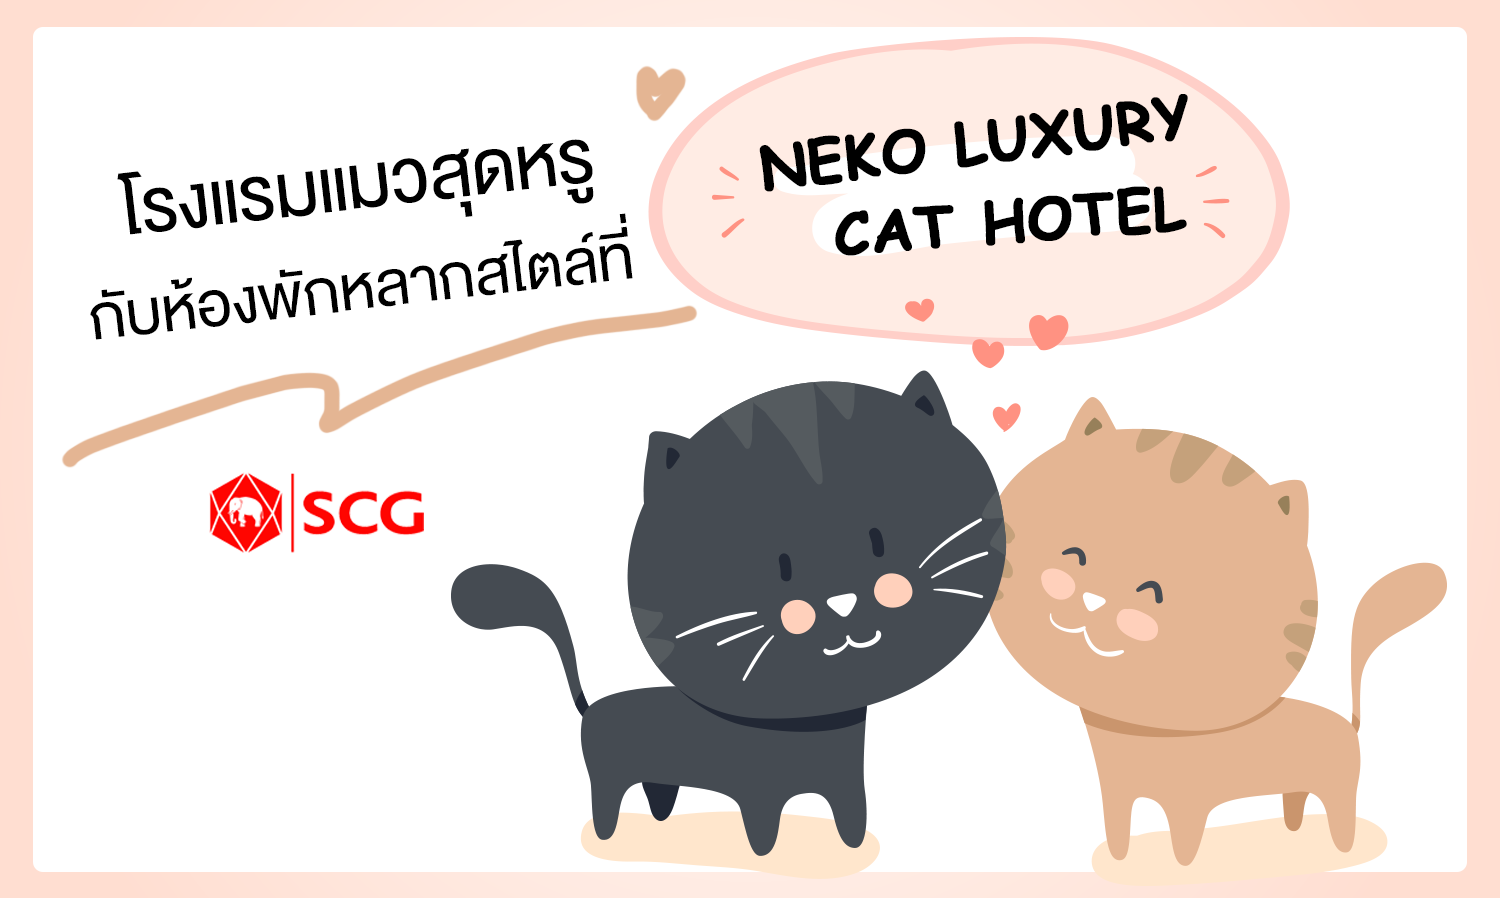 โรงแรมแมวสุดหรูกับห้องพักหลากสไตล์ ที่ NEKO LUXURY CAT HOTEL